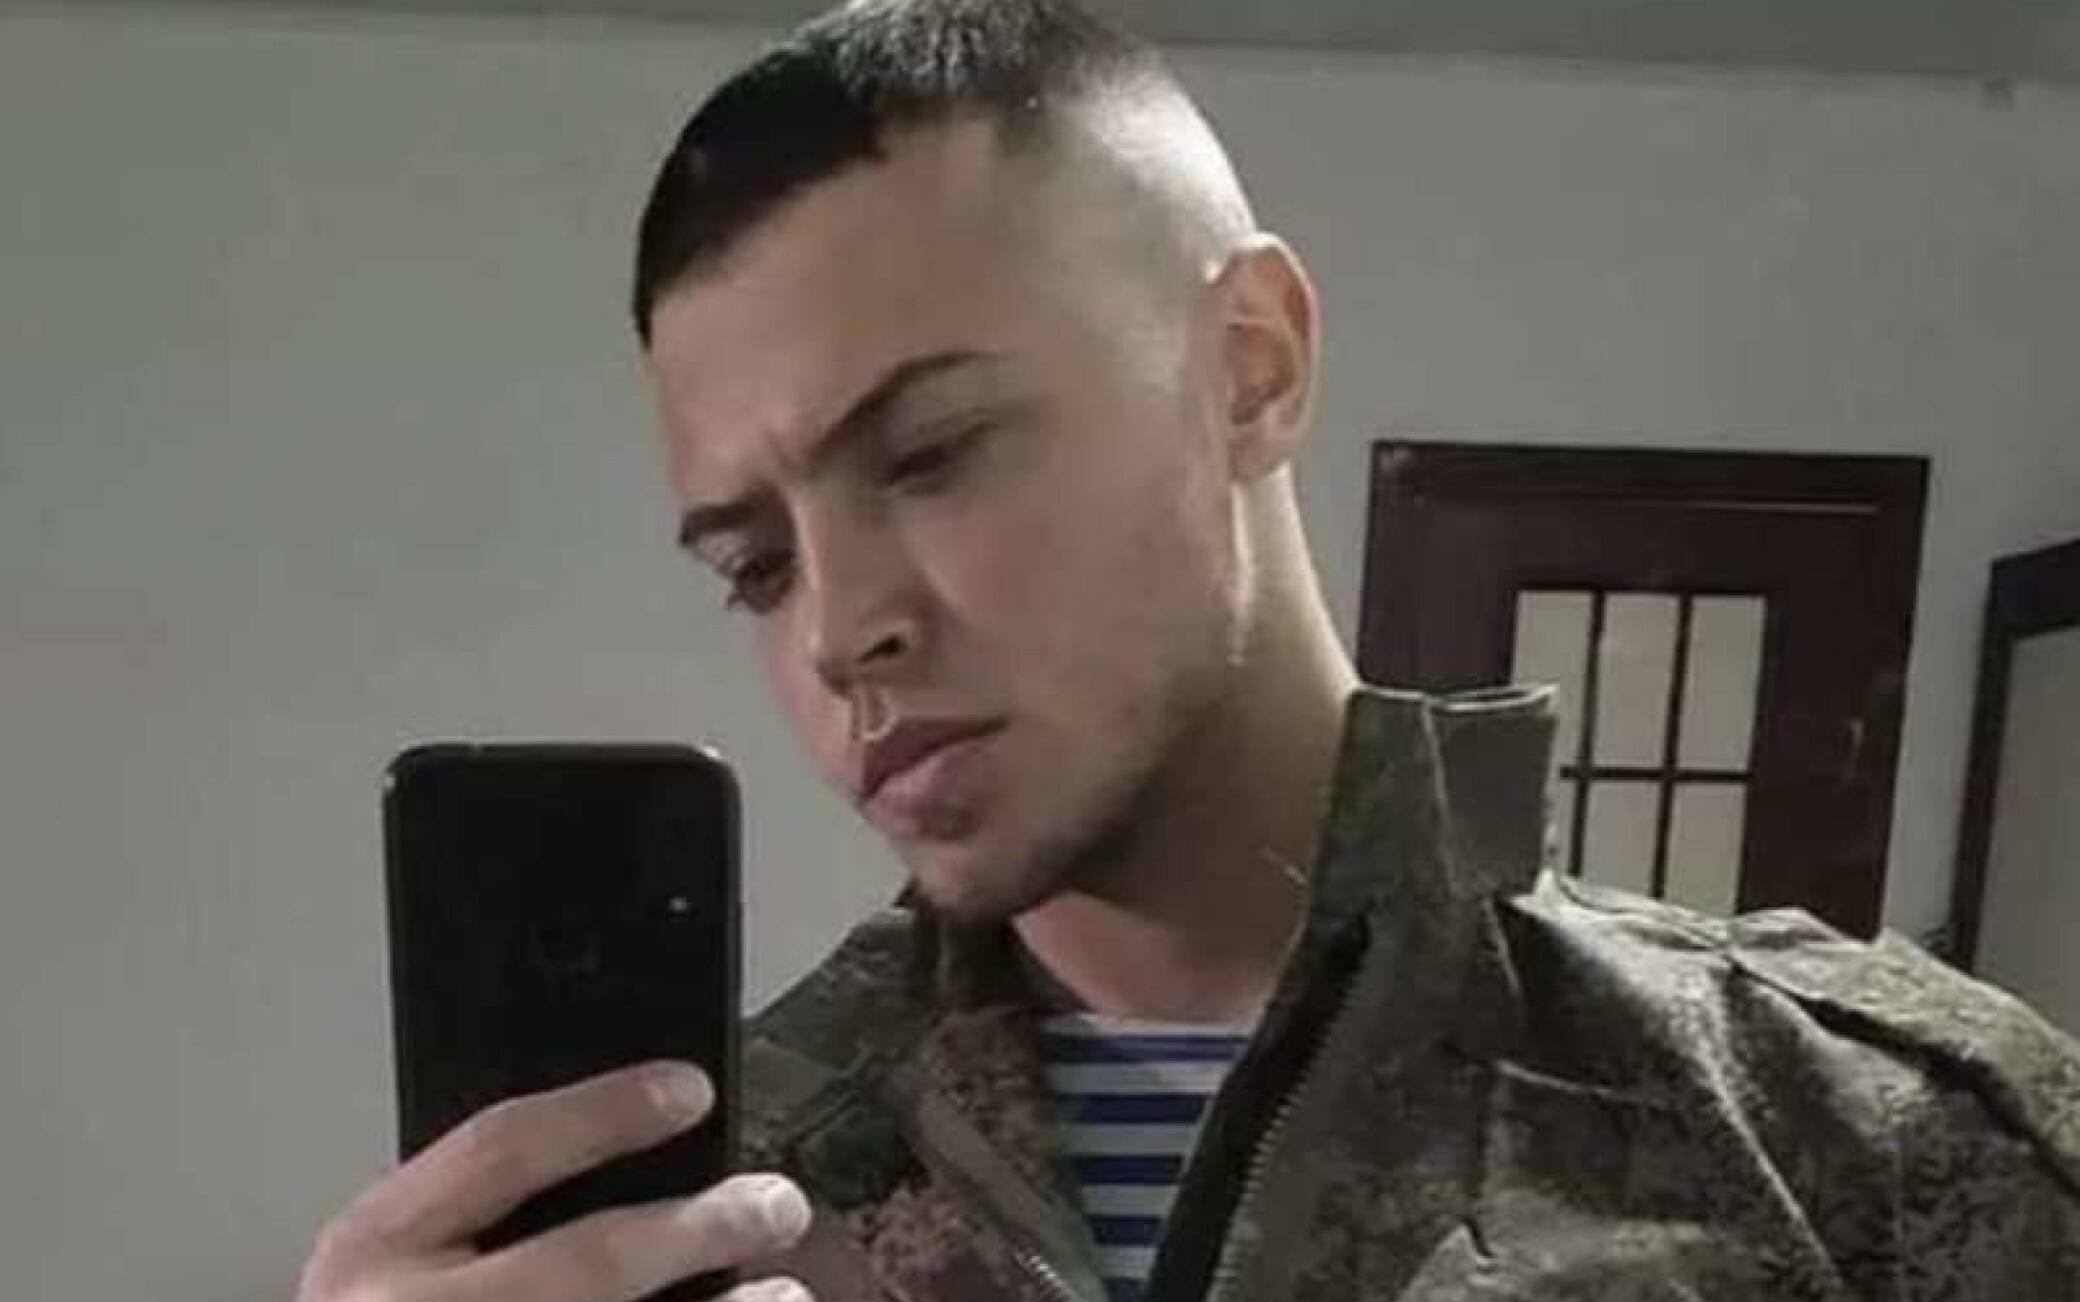 Elia Putzolu, 28enne di origine sarde, che viveva da tempo a Tangrog nei dintorni della città russa di Rostov. E' lui il foreign fighter italiano ucciso a Dontestk mentre combatteva a fianco dei russi. +++ FACEBOOK/ELIA PUTZOLU +++ ATTENZIONE LA FOTO NON PUO' ESSERE RIPRODOTTA SENZA L'AUTORIZZAZIONE DELLA FONTE CUI SI RINVIA ++++ NPK ++++